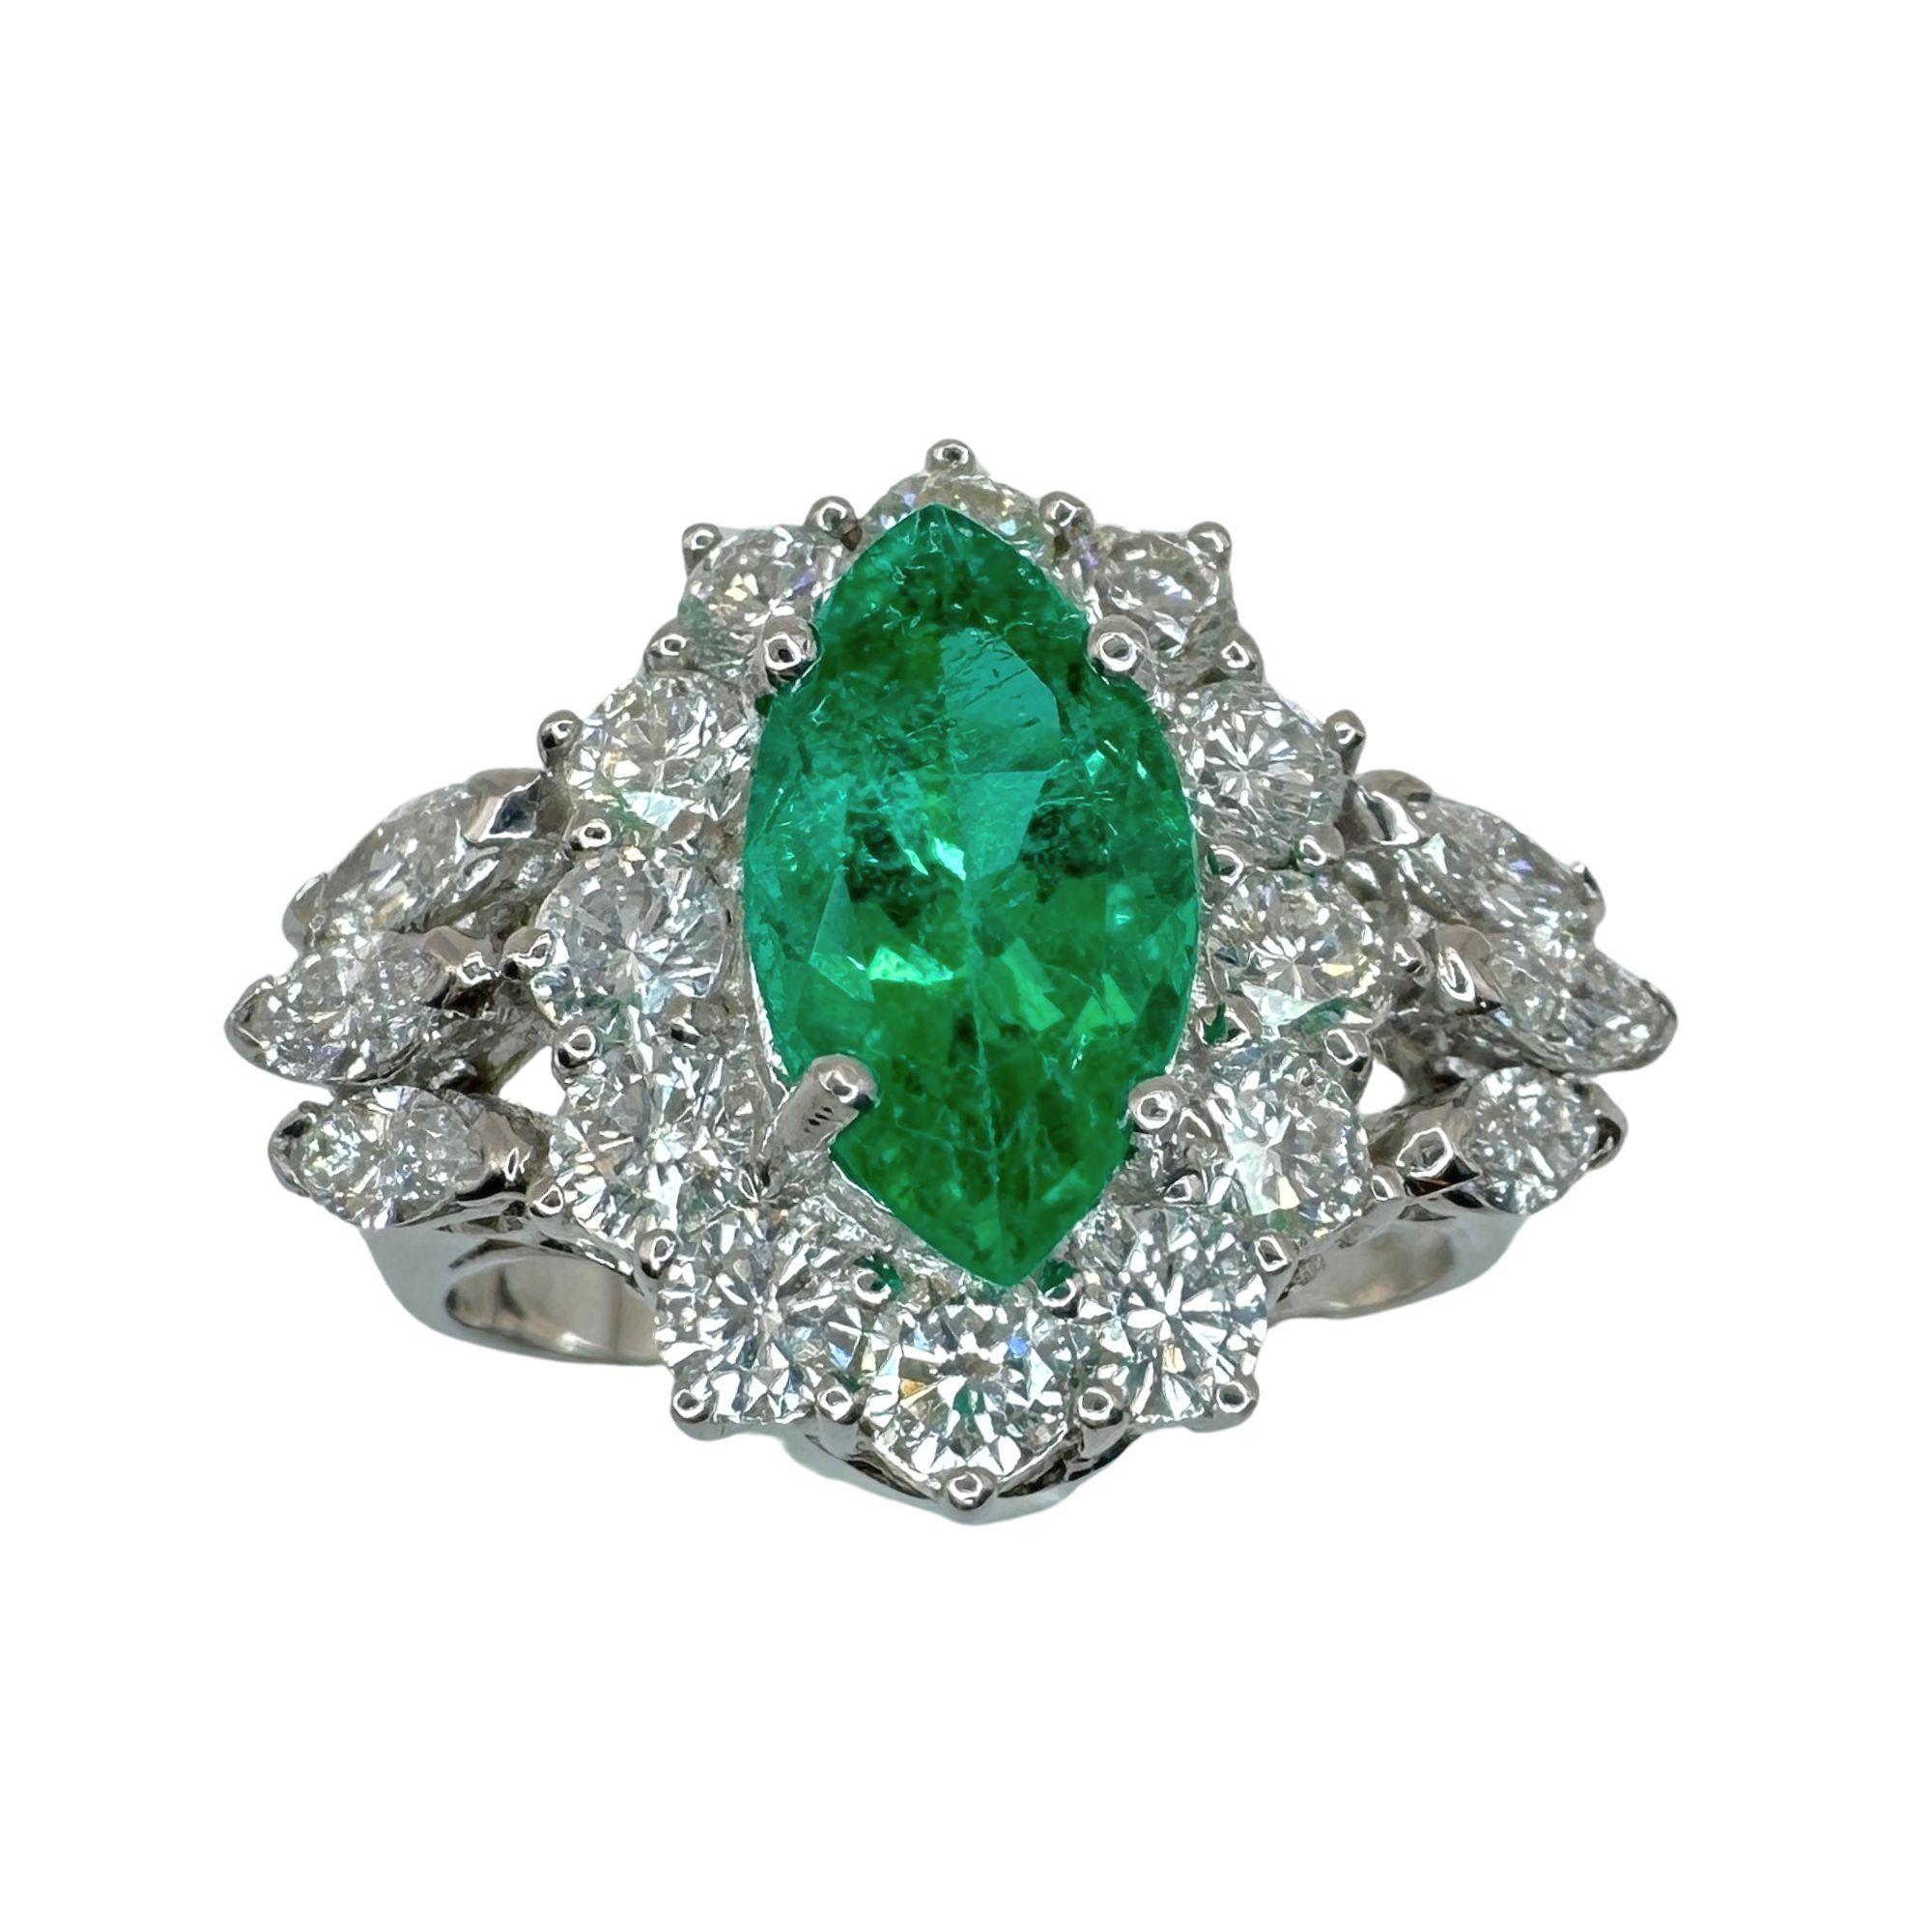 Gönnen Sie sich Luxus mit diesem 18-karätigen Diamant- und Smaragdring. Der aus 18 Karat Weißgold gefertigte Ring ist mit atemberaubenden 1,33 Karat Diamanten besetzt, die einen wunderschönen 1,60 Karat Smaragd umgeben. Er strahlt Eleganz und